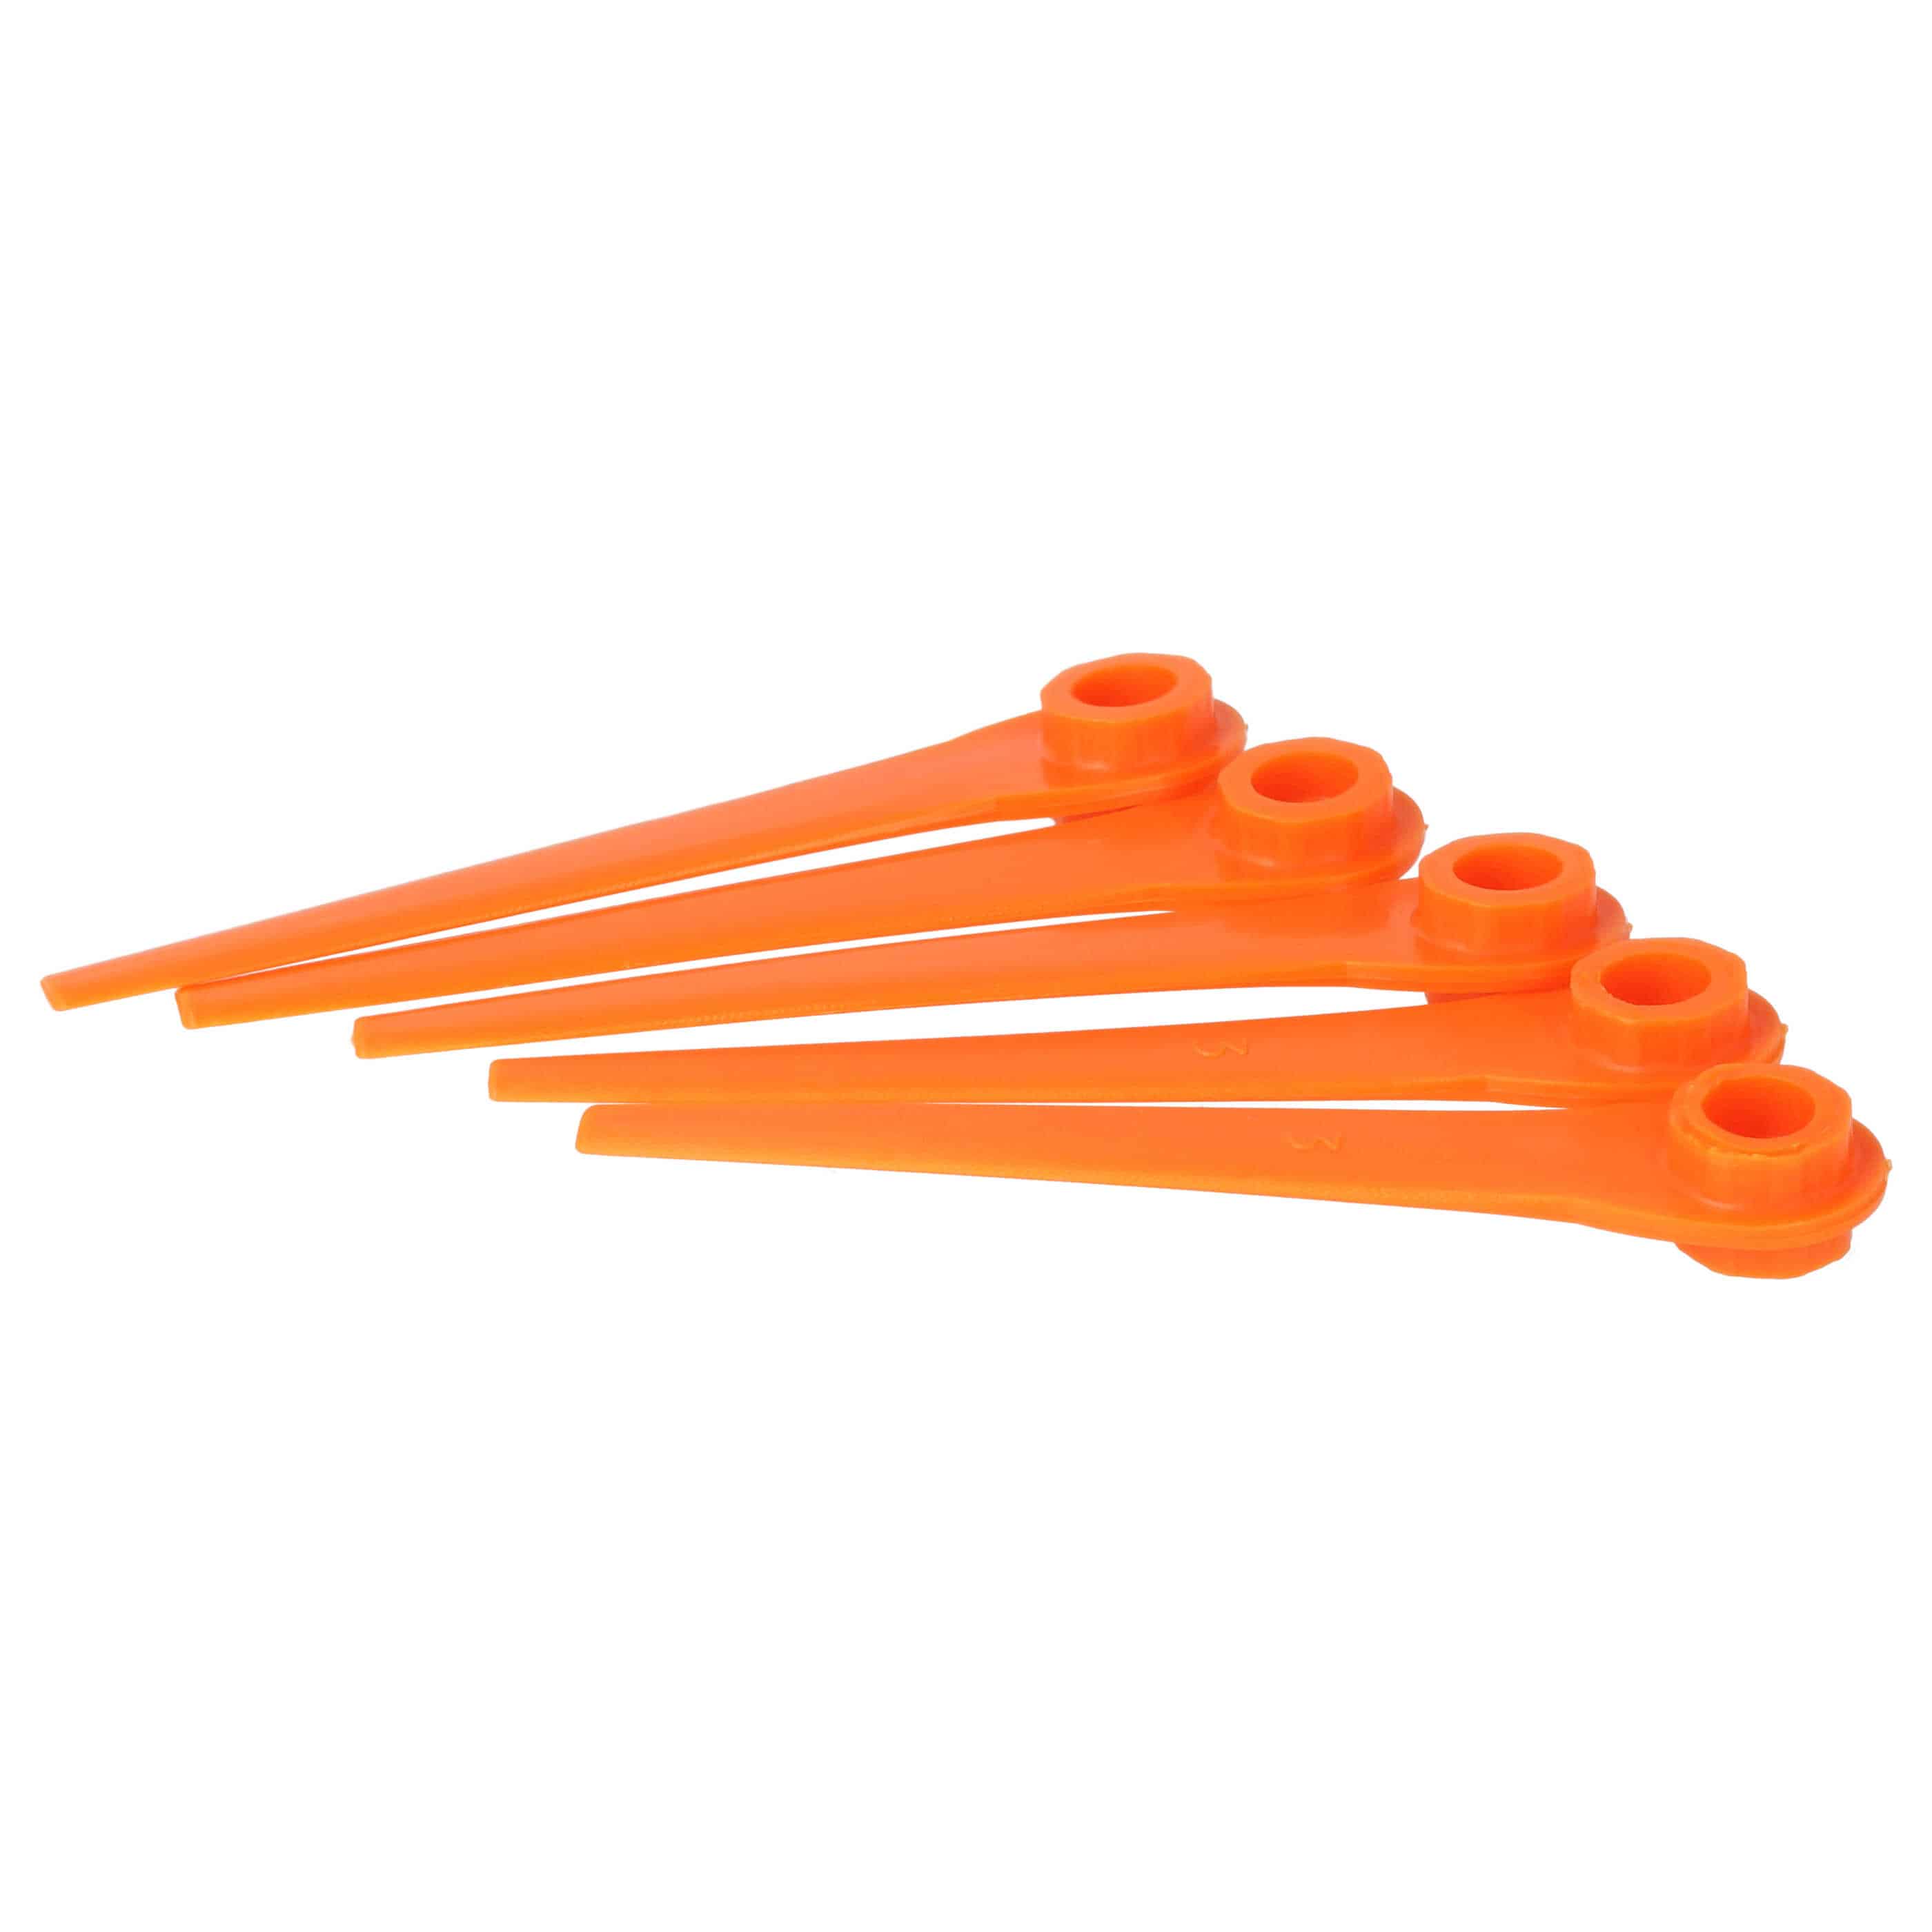 5x Lames remplace Gardena RotorCut 5368-20 pour débroussailleuse – Couteaux plastique, Orange